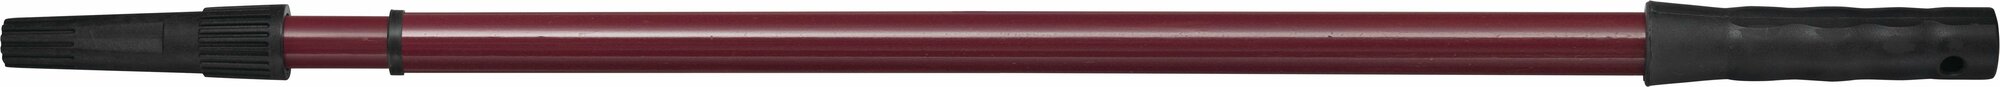 Ручка телескопическая металлическая 1 5-3 м Matrix